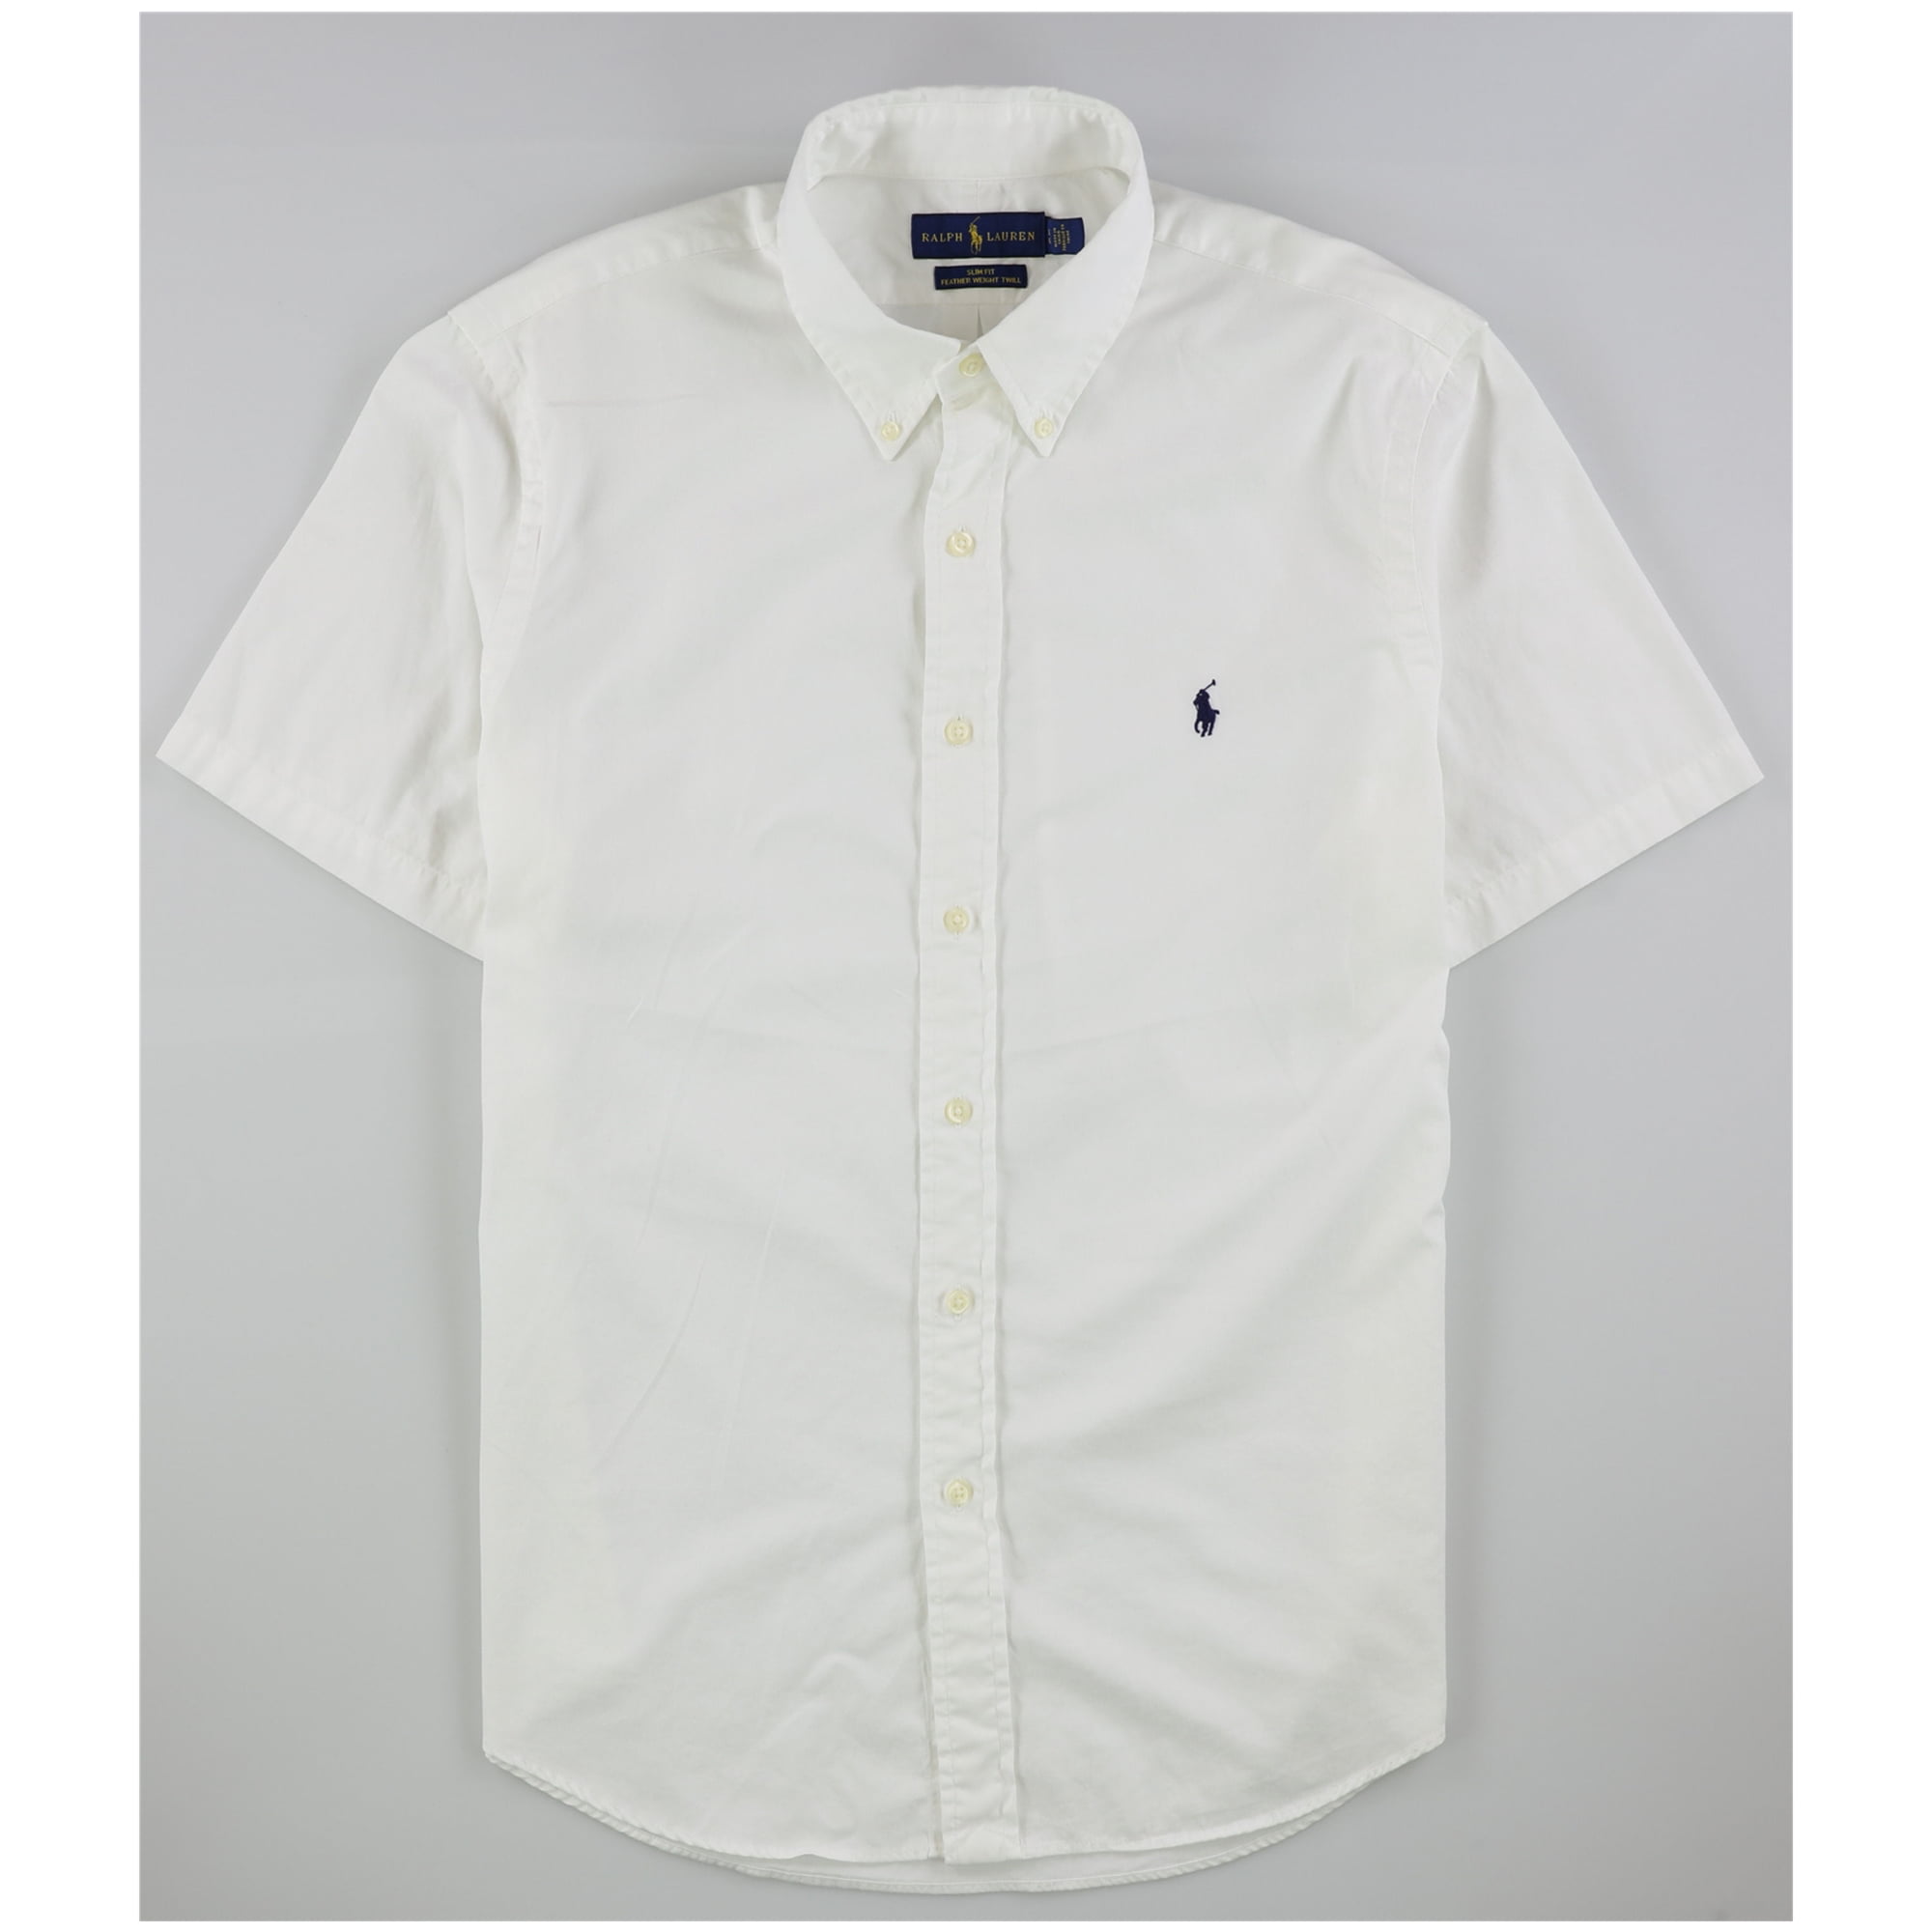 Ralph Lauren - Ralph Lauren Mens Twill Button Up Shirt, white, Large ...